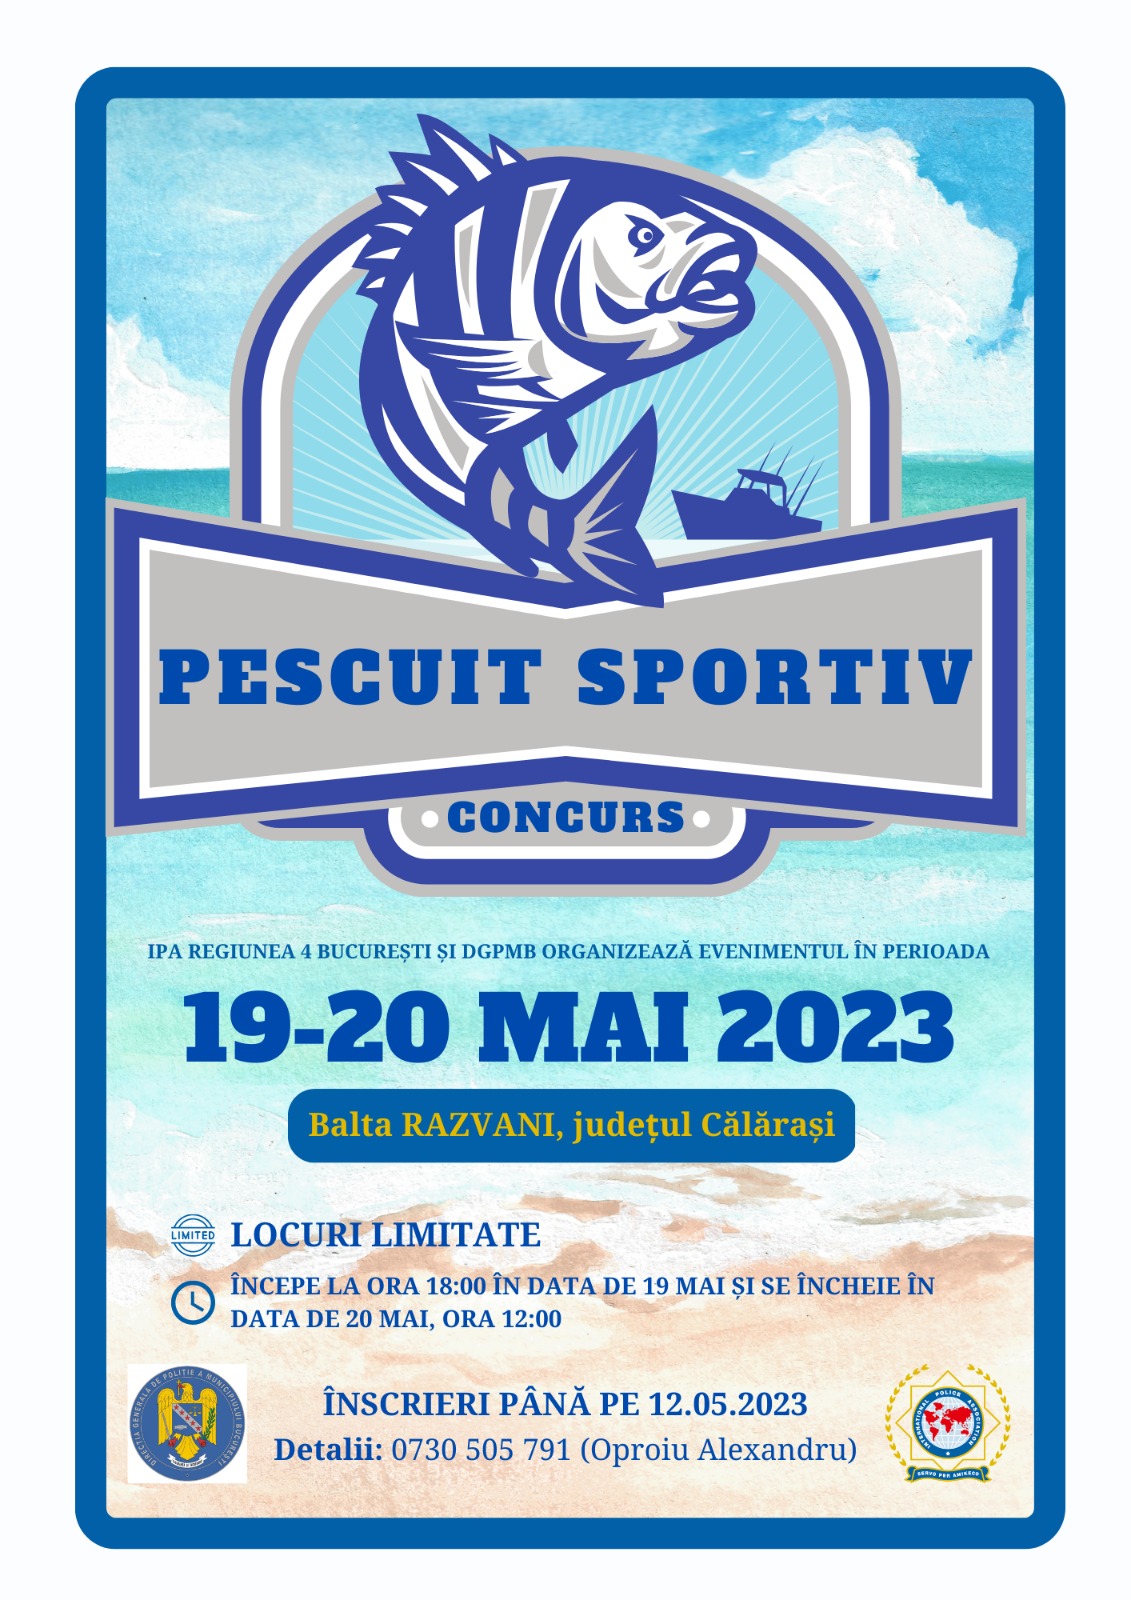 Concurs de pescuit sportiv organizat de IPA Regiunea 4 București